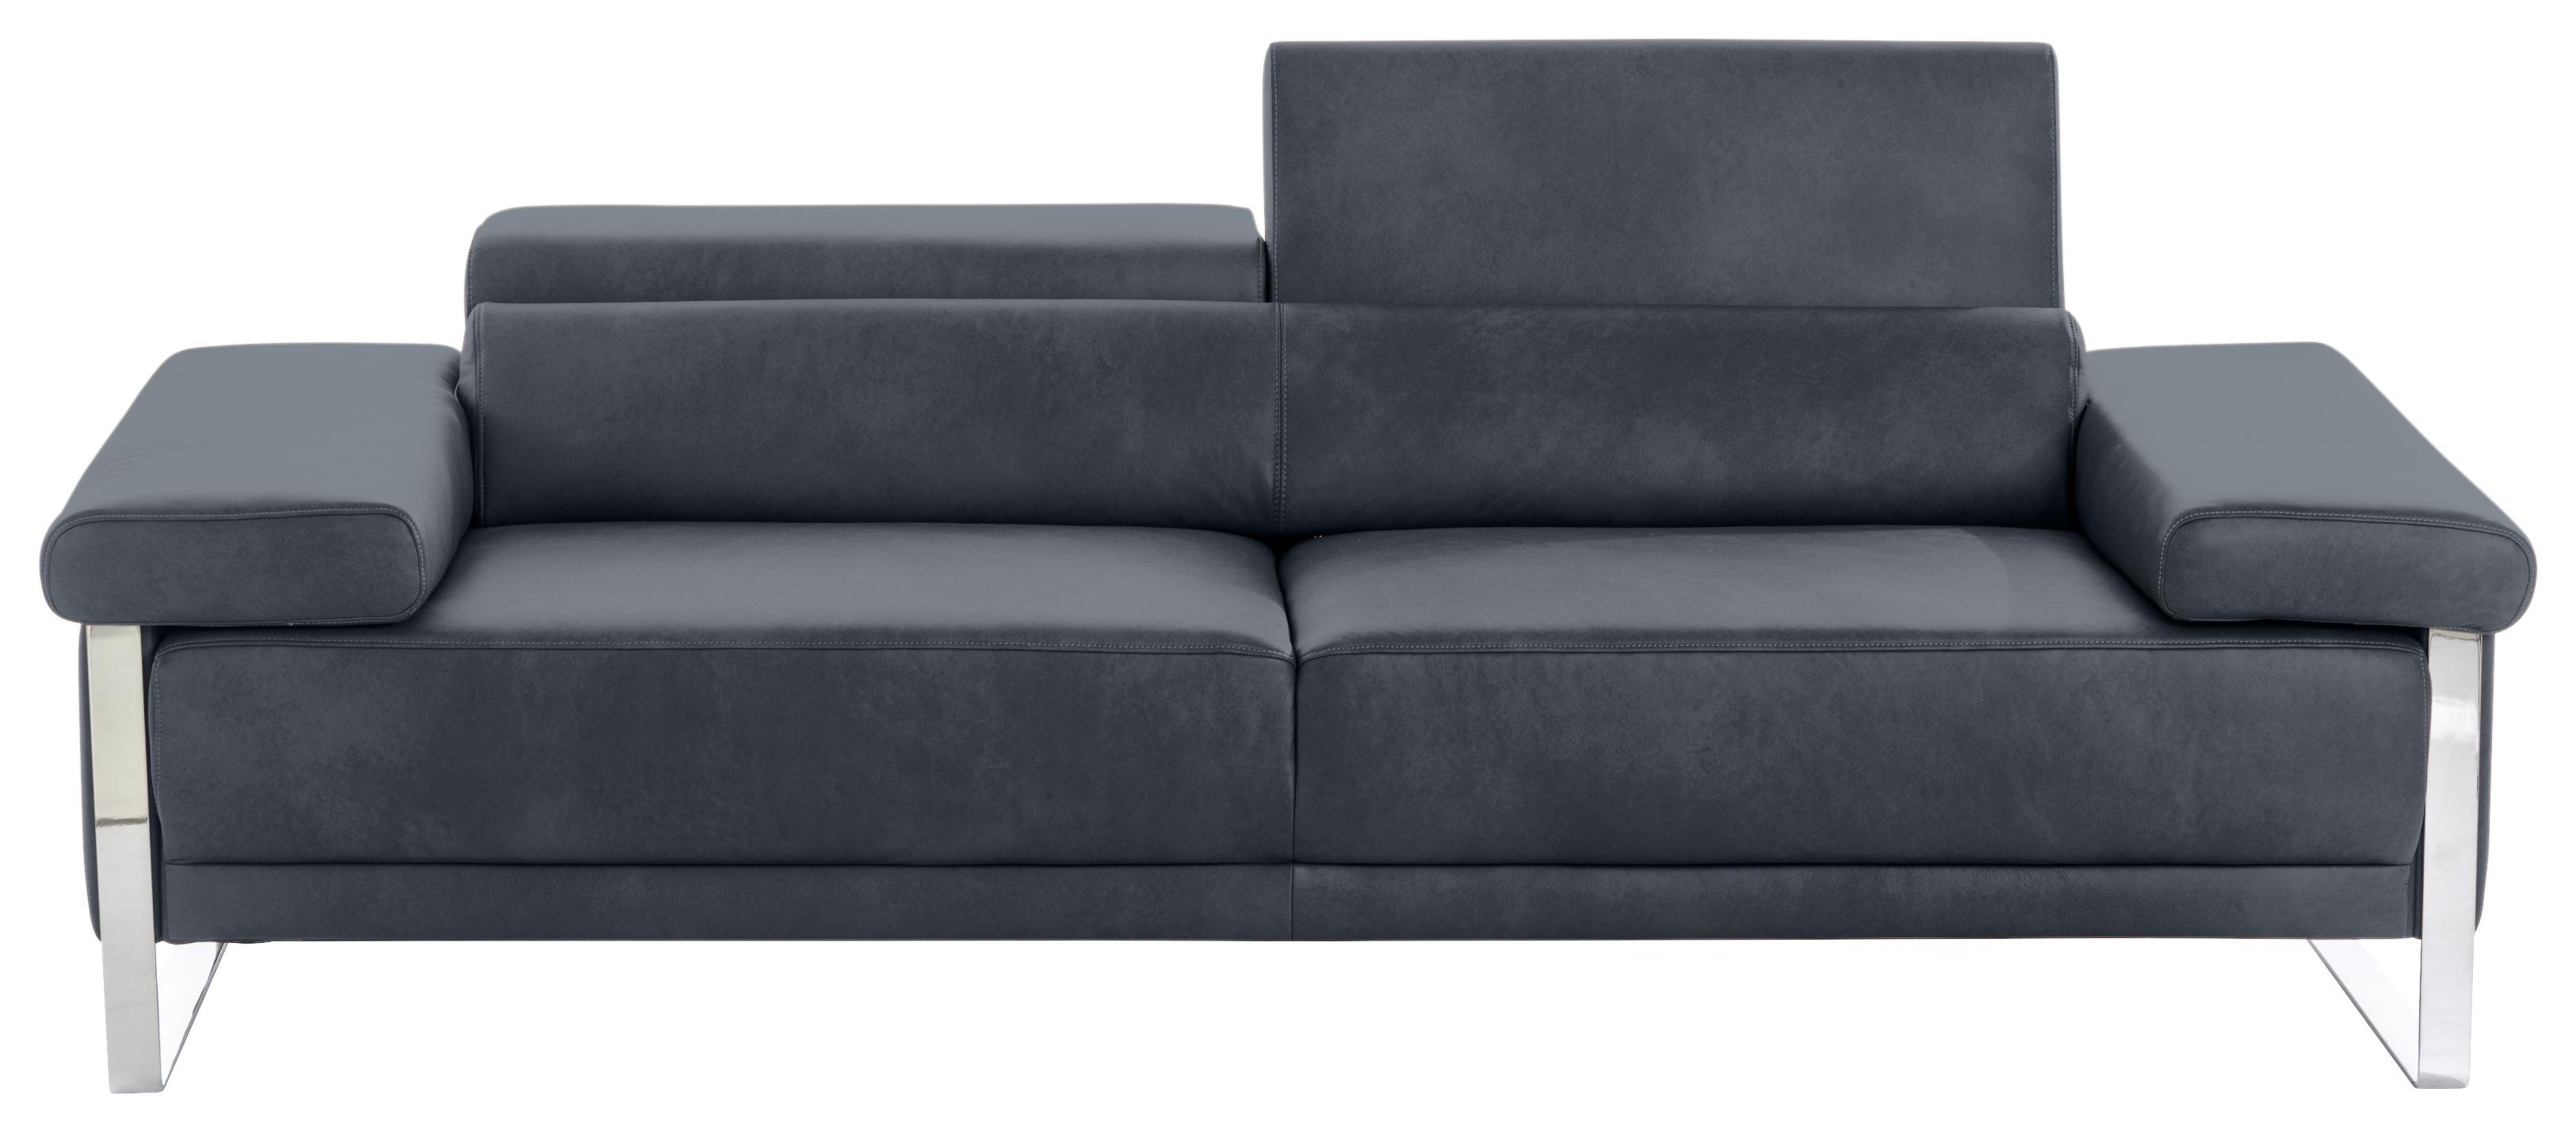 2-Sitzer-Sofa Floyd Rücken Echt Dunkelblau Vintage-Look - Chromfarben/Dunkelblau, KONVENTIONELL, Leder (230/71/106cm) - W.Schillig